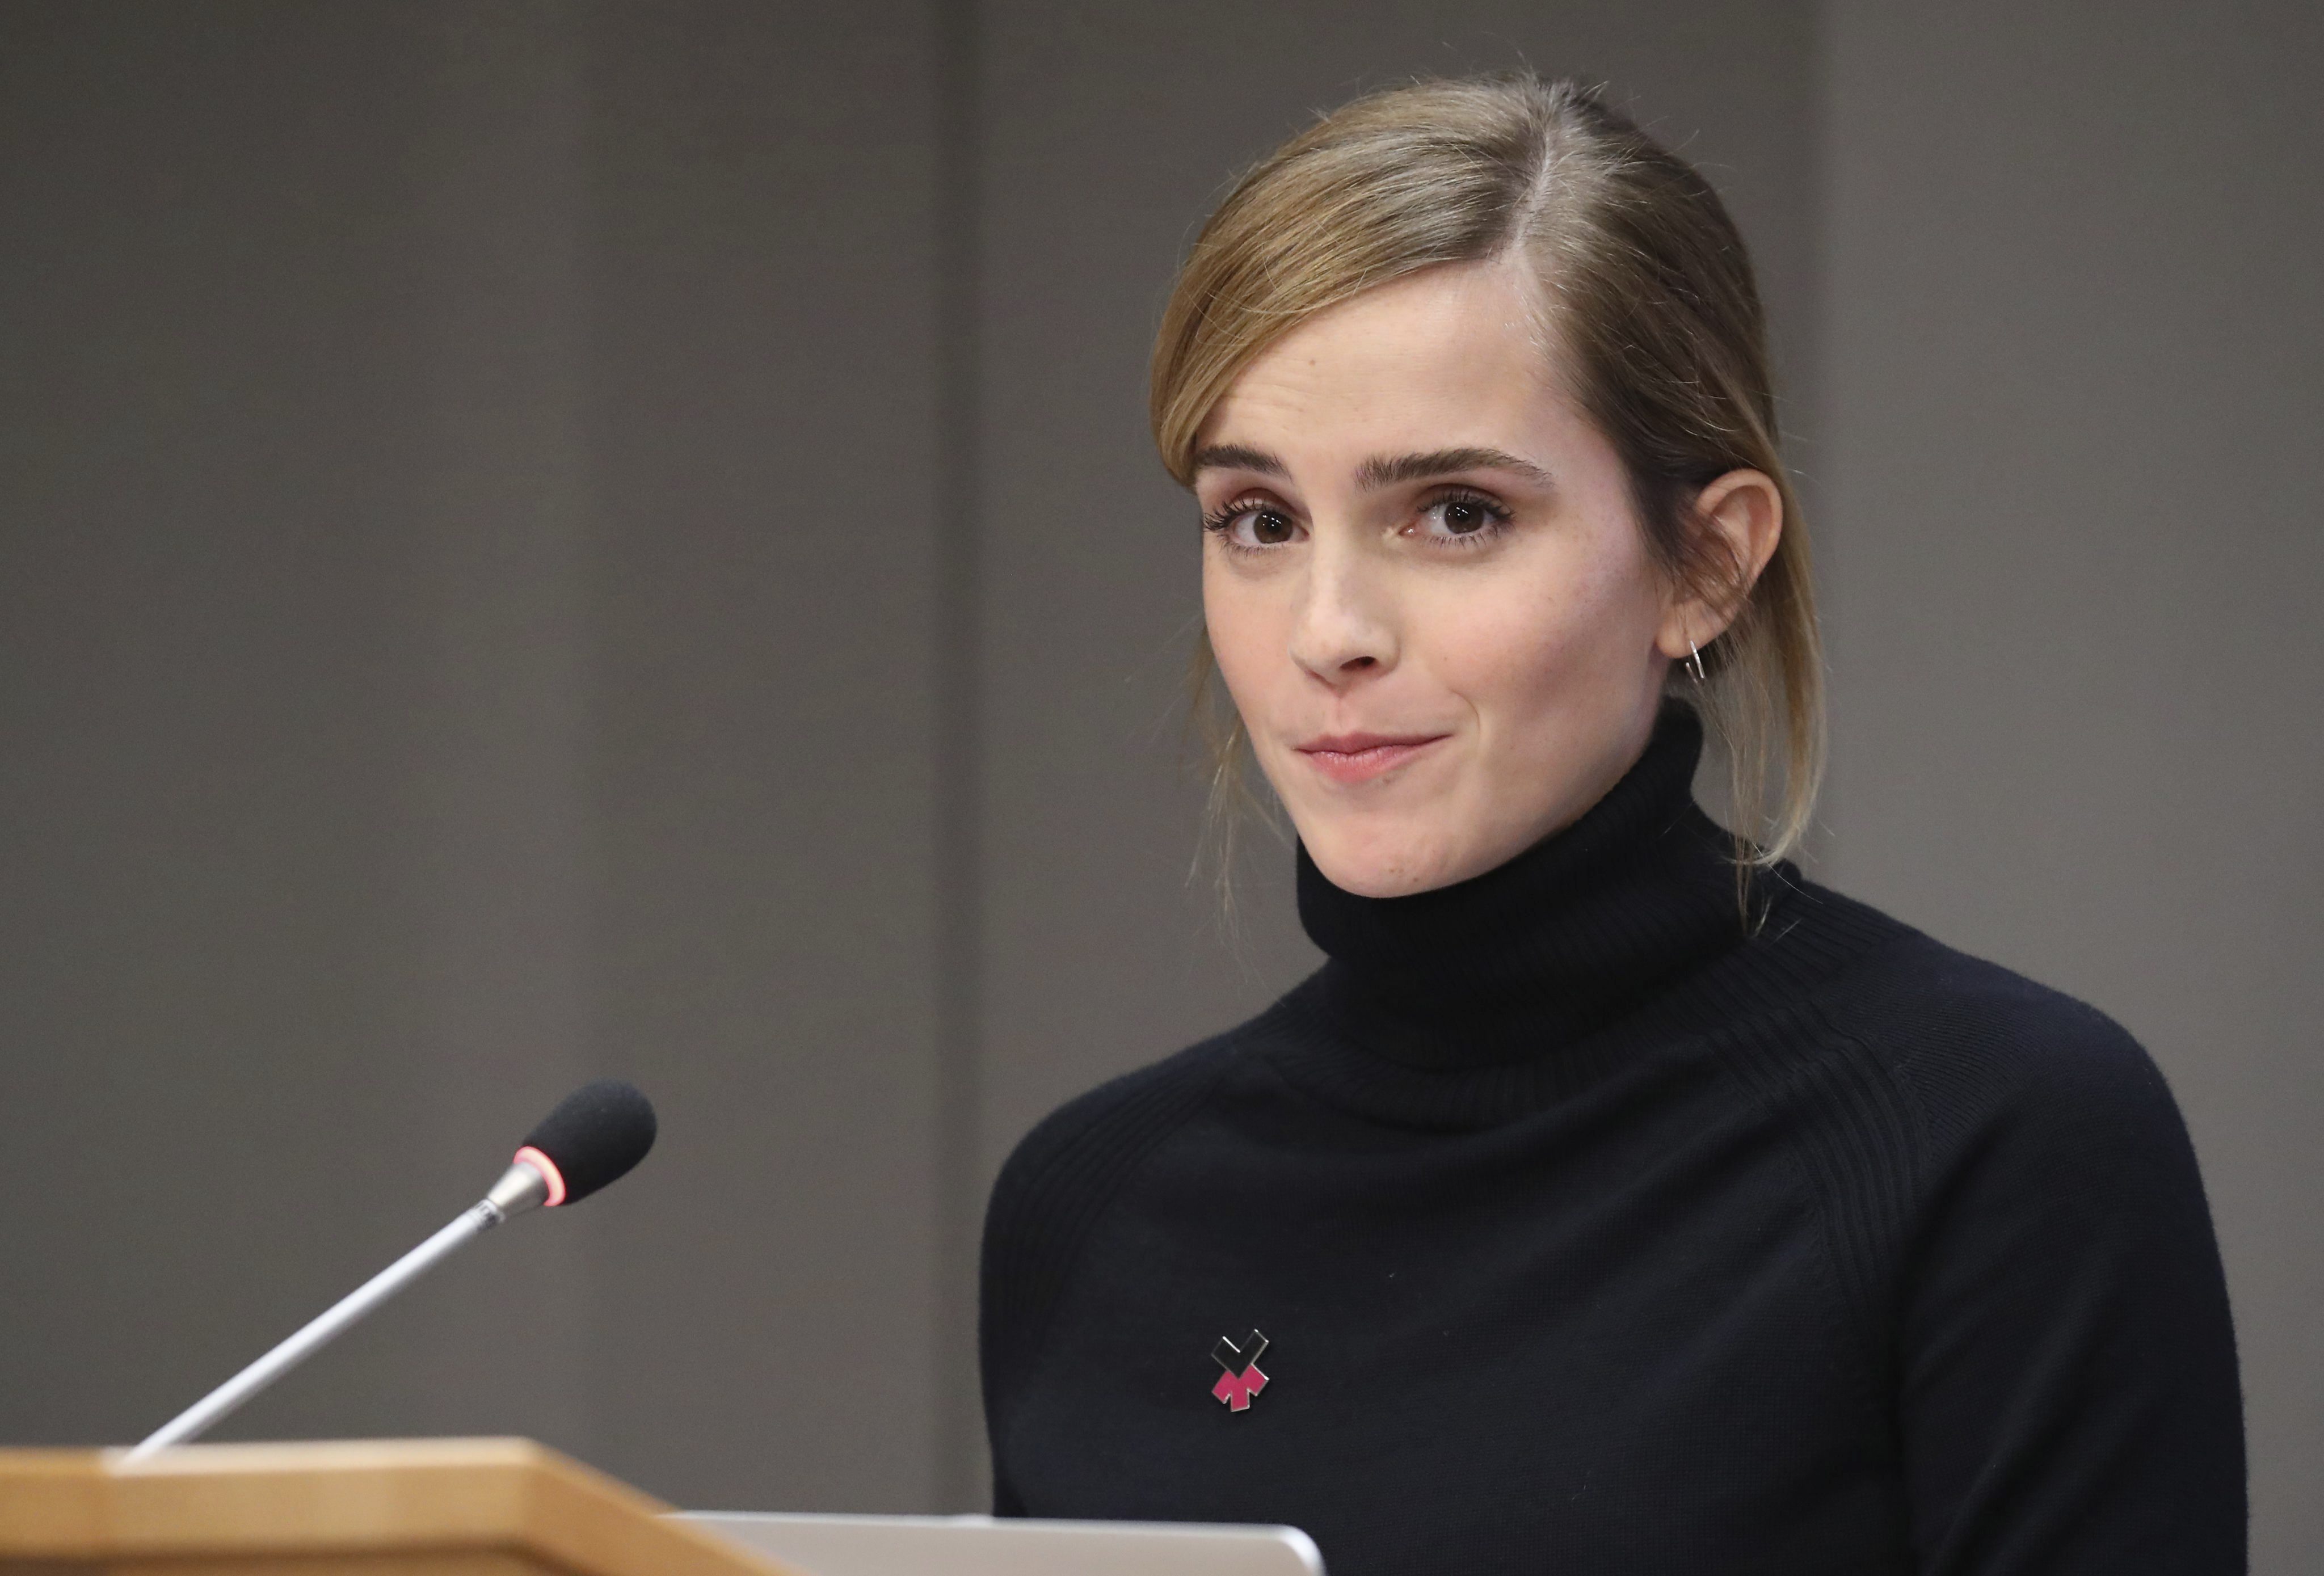 La actriz británica Emma Watson fue embajadora de ONU Mujeres. (EFE/ANDREW GOMBERT/Archivo)
